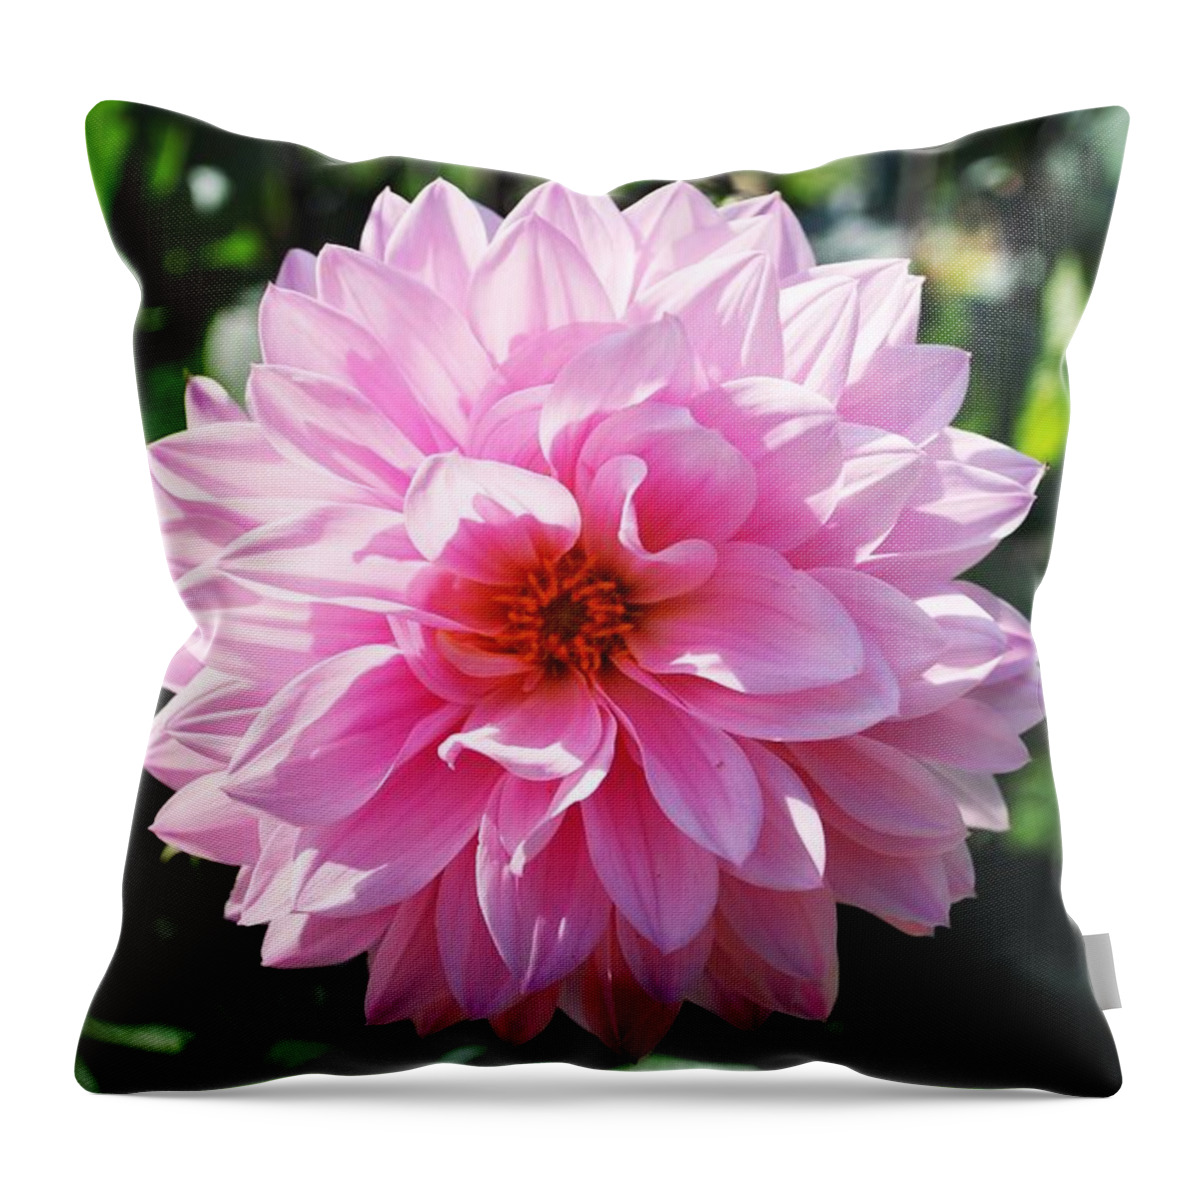 Pink Throw Pillow featuring the photograph Pink Flower by Matt Quest